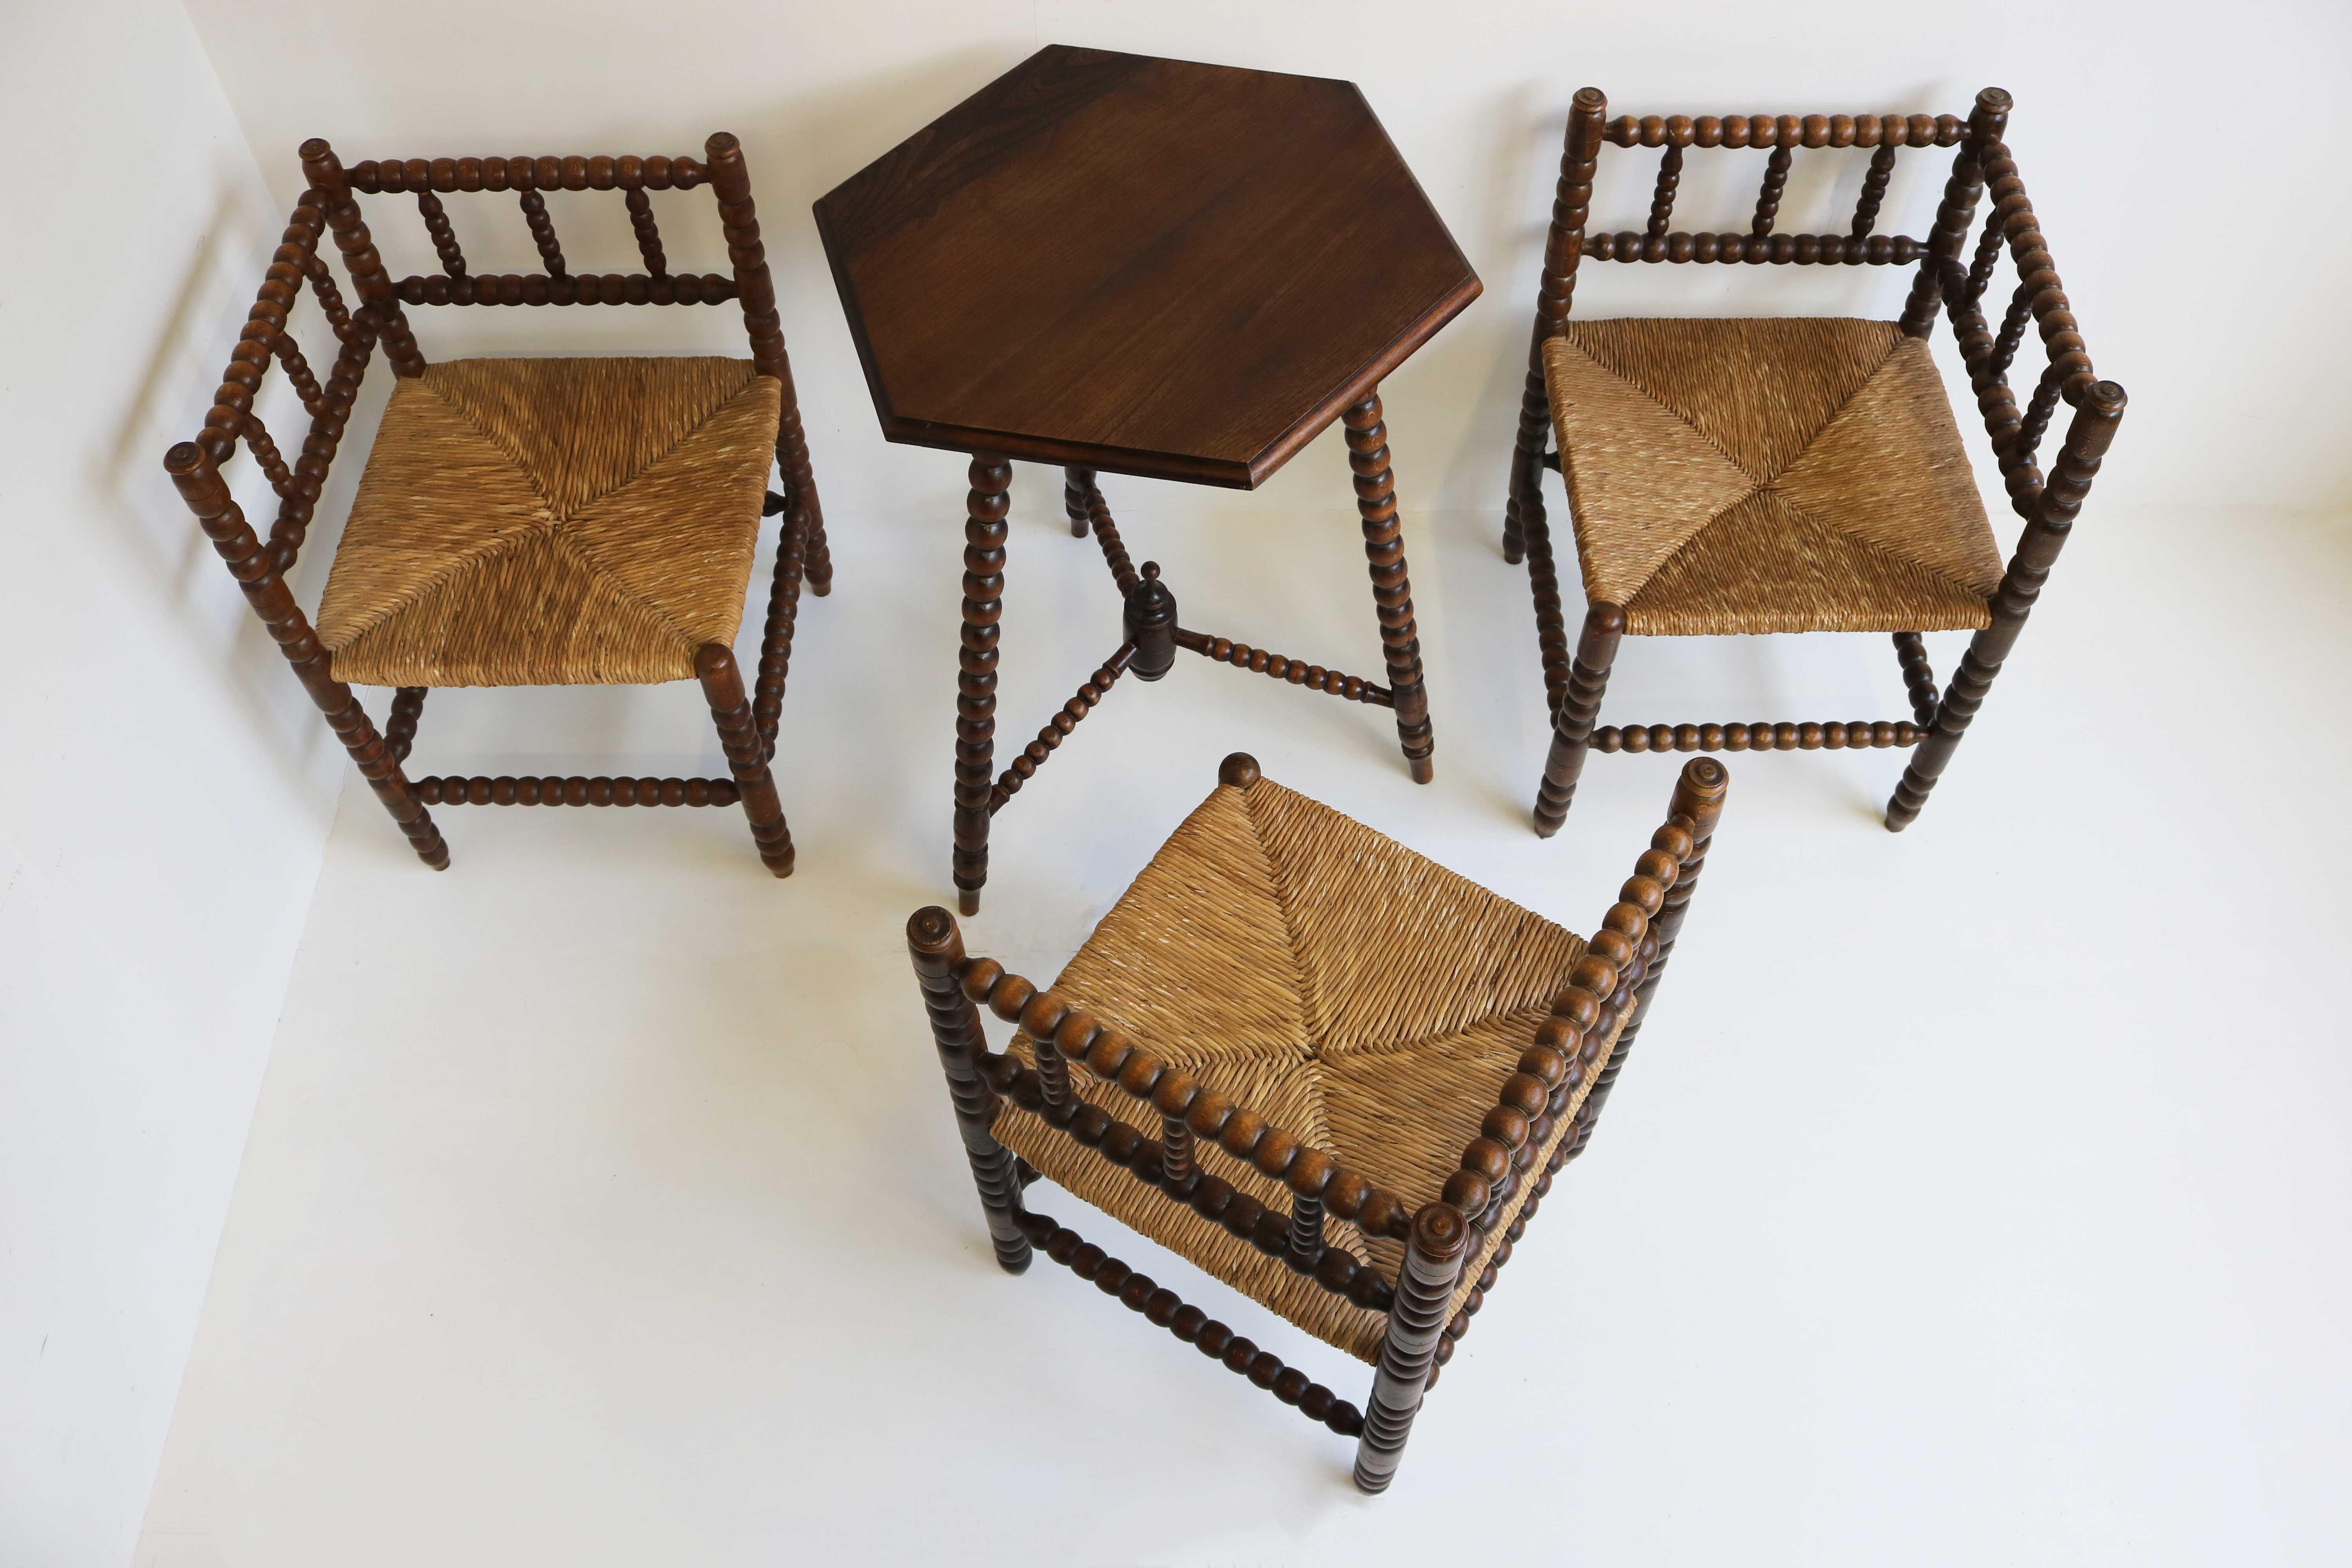 Ensemble de trois chaises à tricoter d'angle en chêne et rotin, avec table d'appoint hexagonale. Dutch, ca 1900, Country Living, Farmhouse Decor.

Charmant ensemble de trois chaises à tricoter typiquement hollandaises, avec table d'appoint